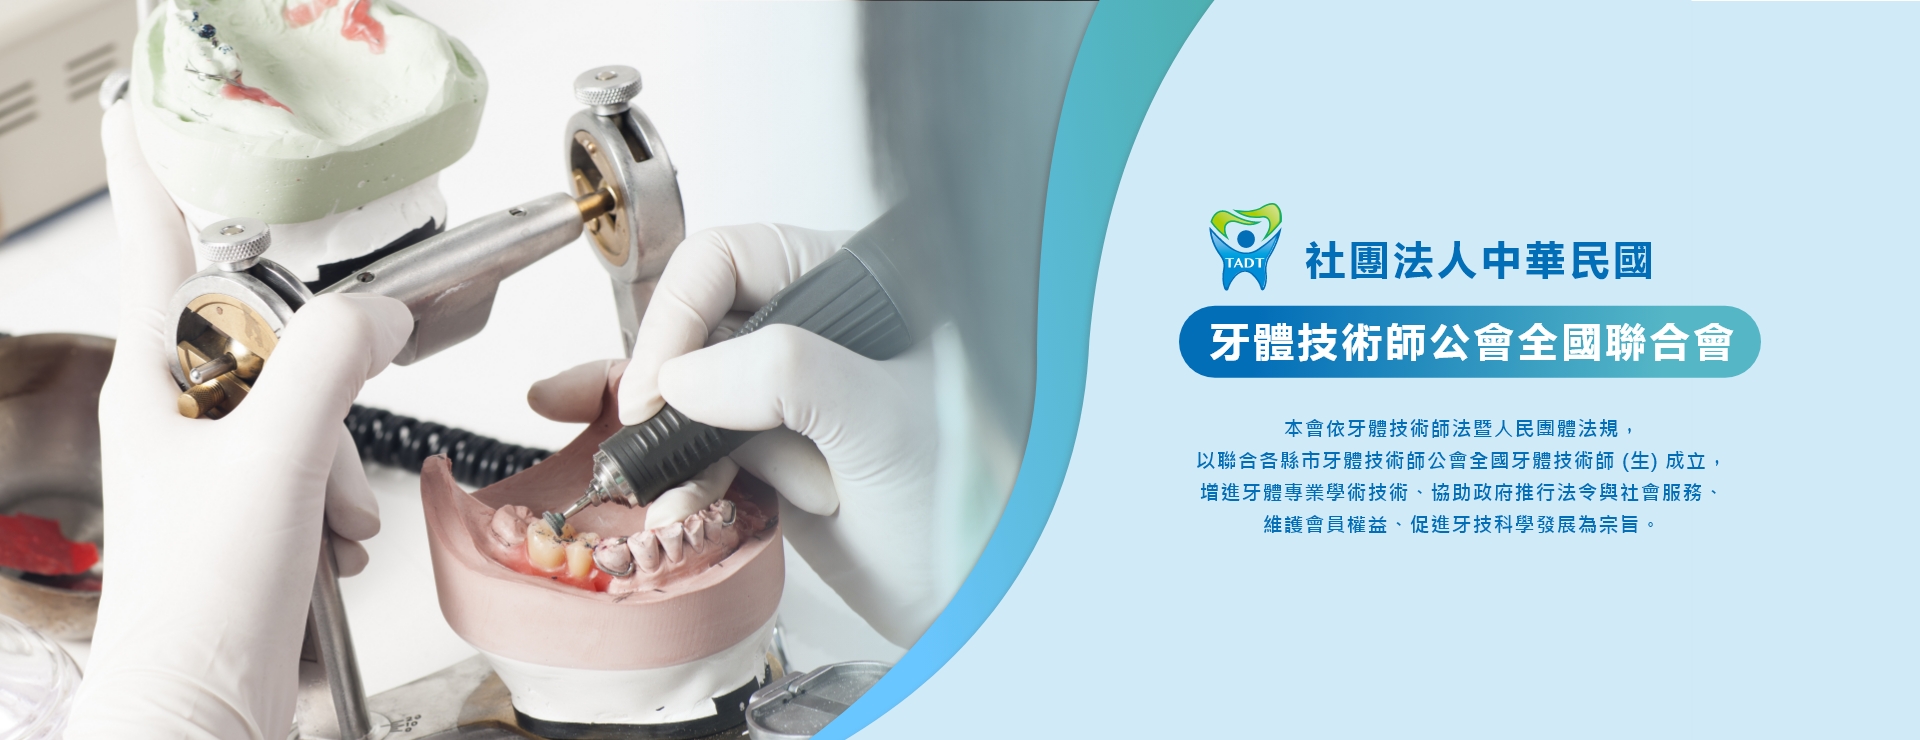 中華民國牙體技術師公會全國聯合會